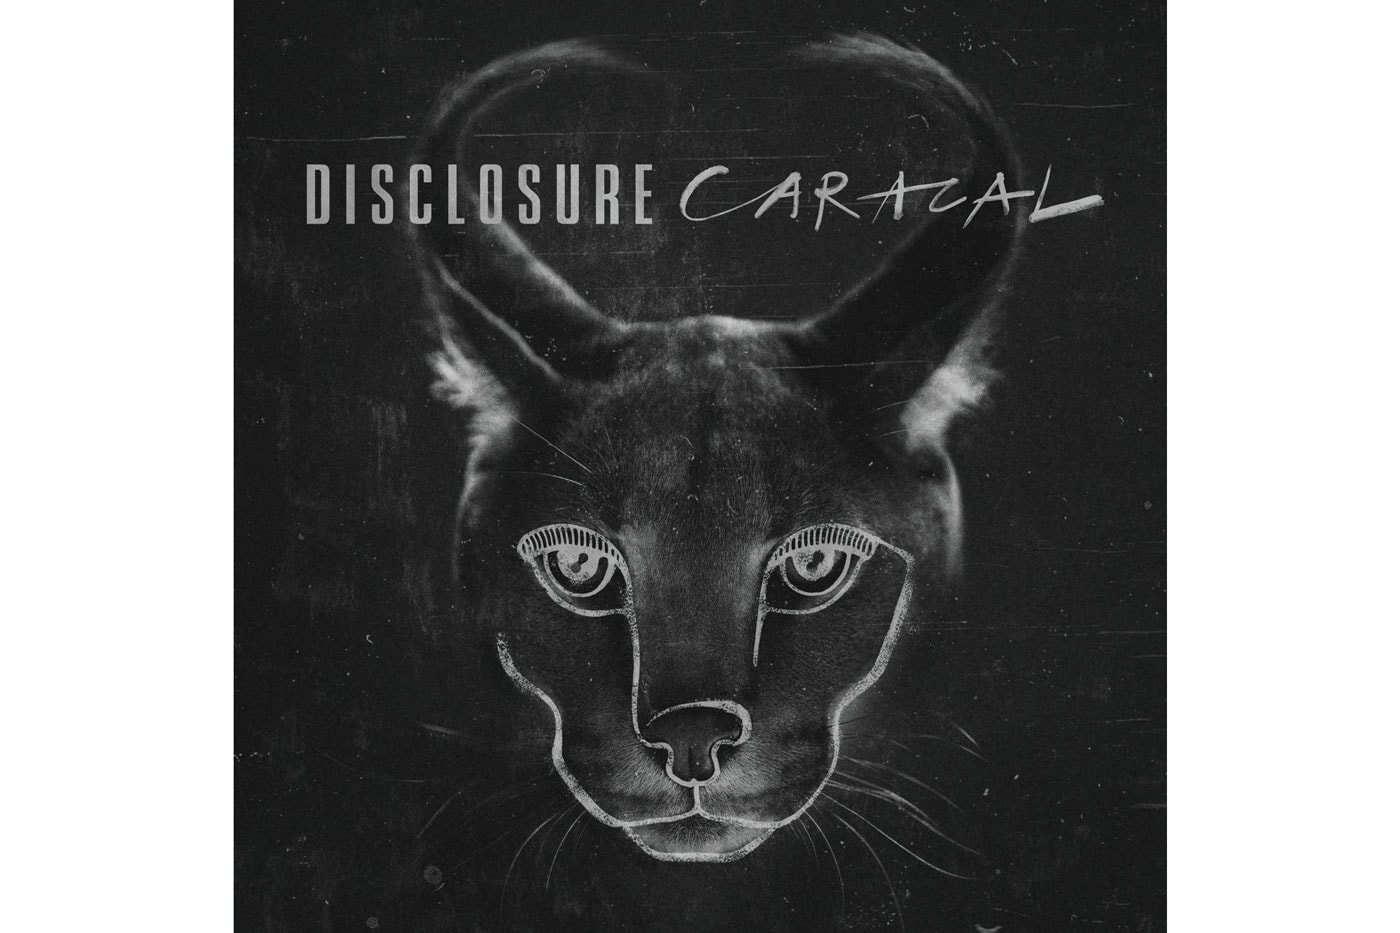 Stream Disclosure's New Album 'Caracal'